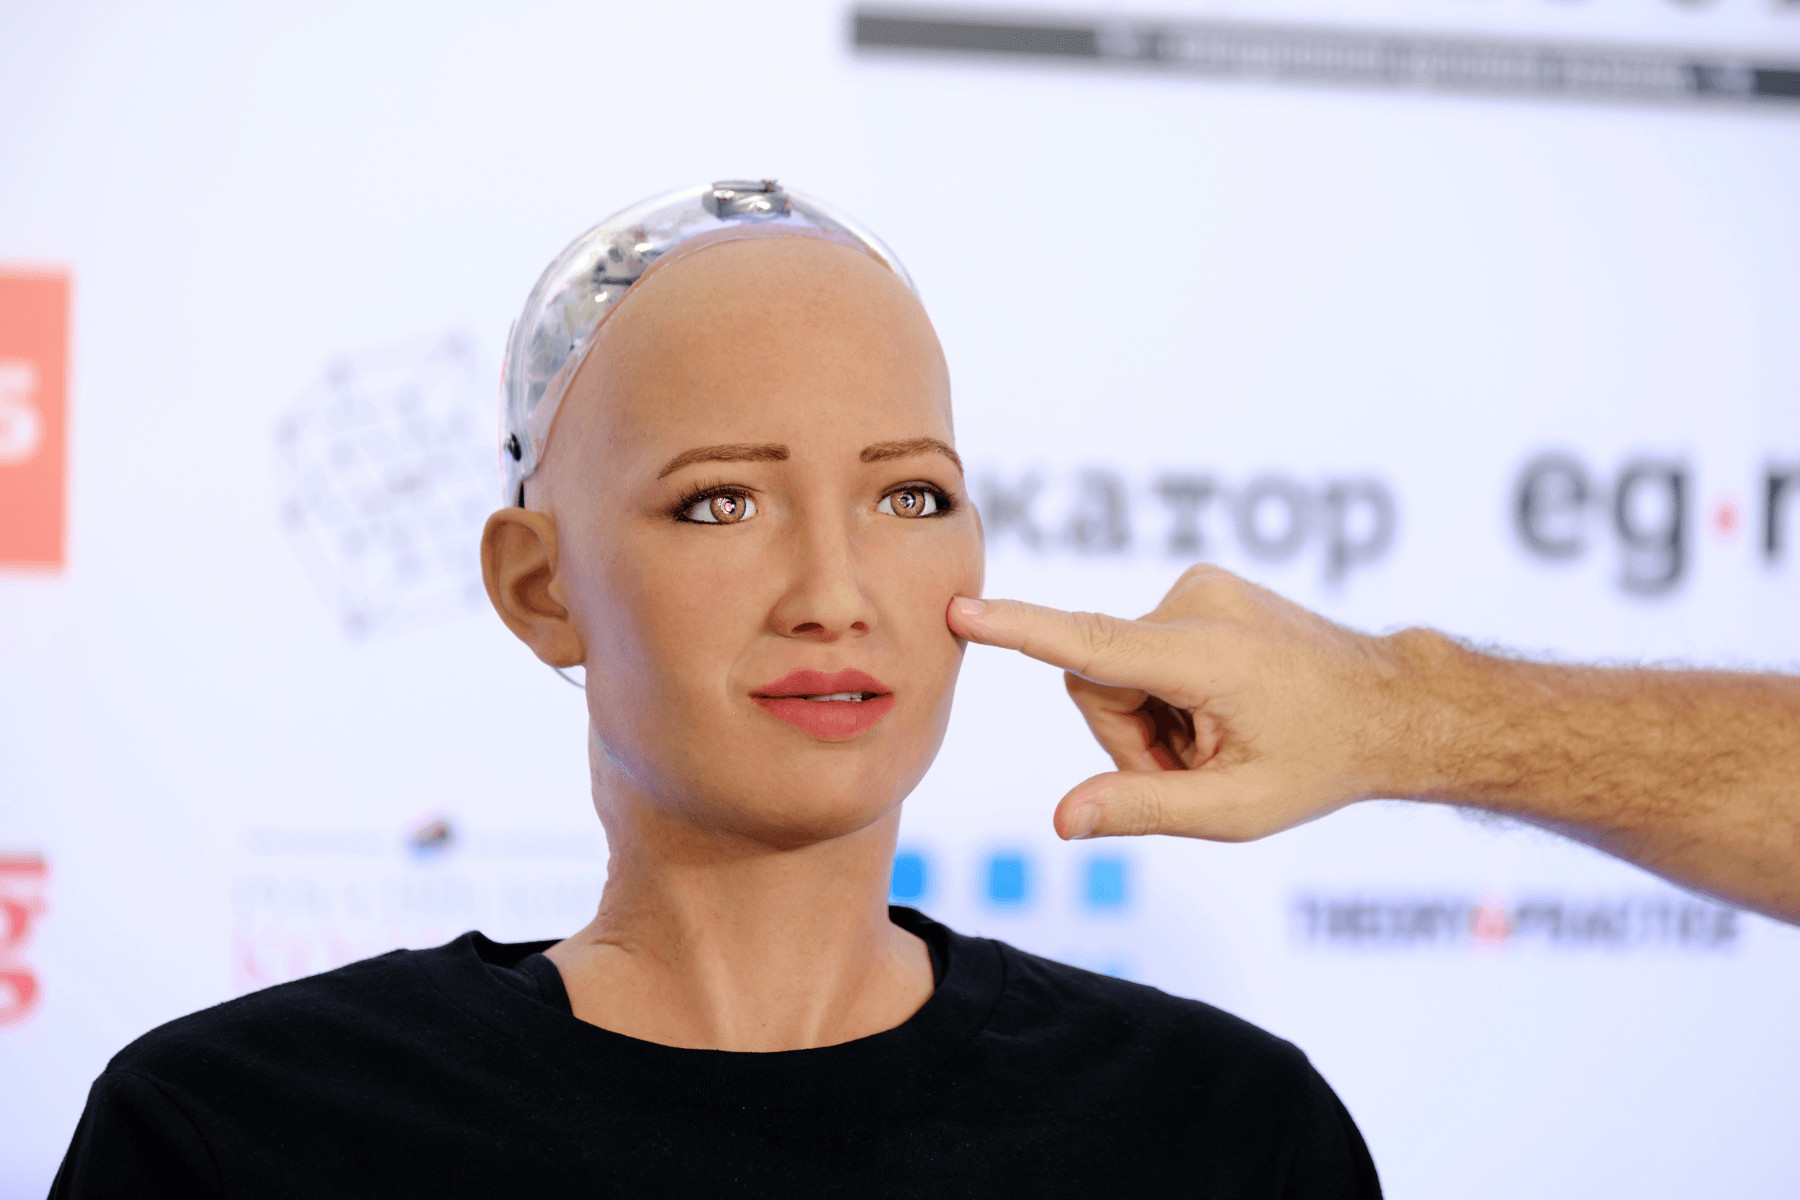 Η Σοφία, το διασημότερο ρομπότ στον πλανήτη, μιλά στο in για το μέλλον της ανθρωπότητας και τη… Σαντορίνη - Οικονομικός Ταχυδρόμος